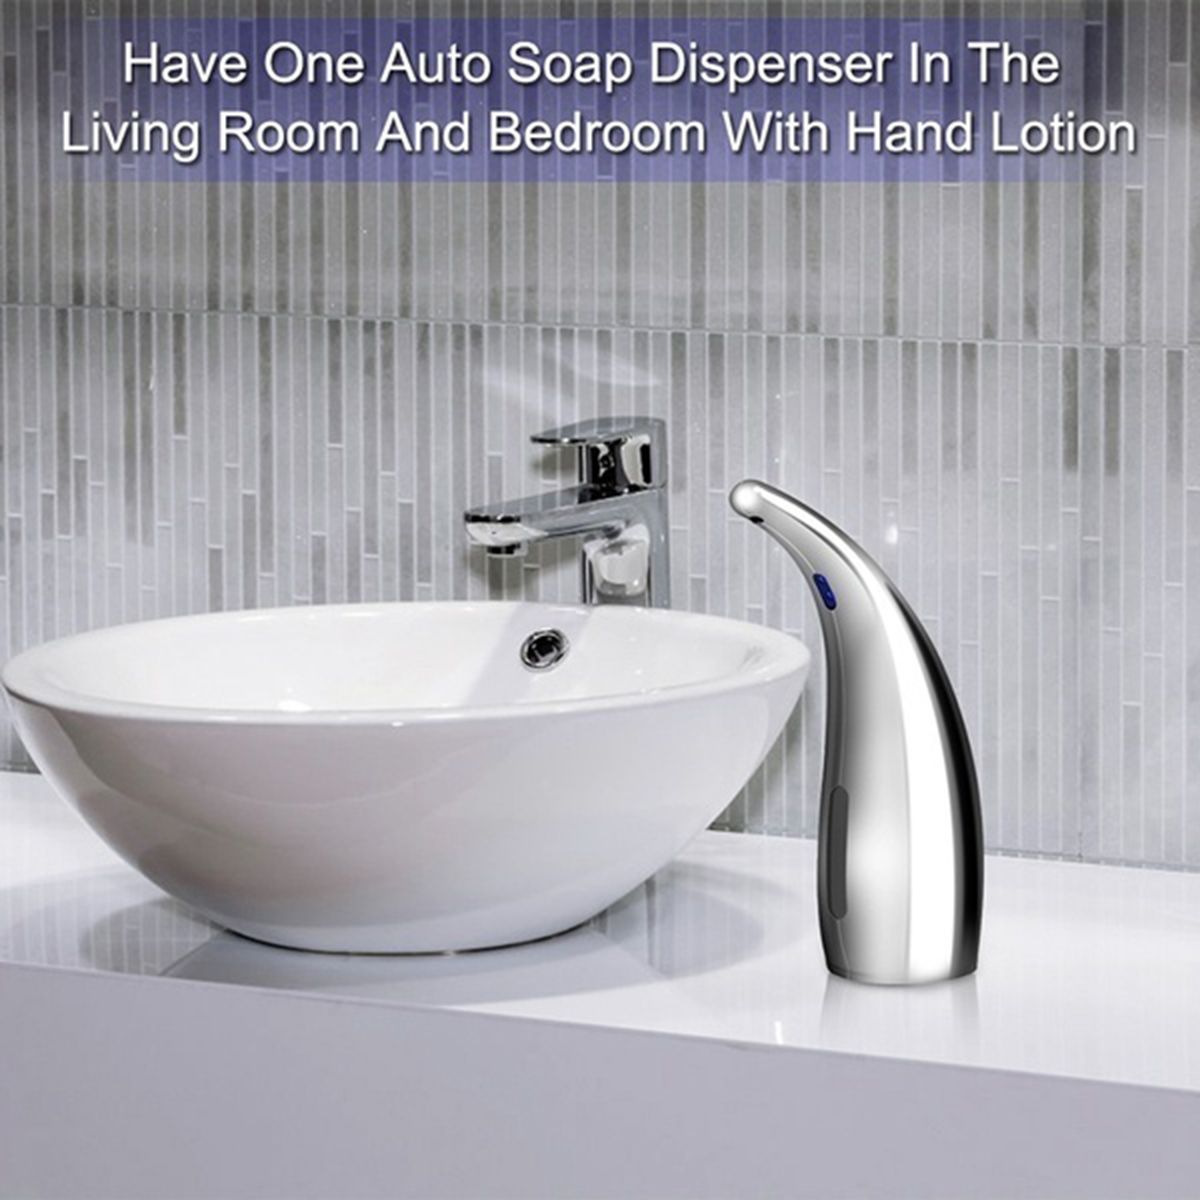 Automatic-Infrared-Motion-Sensor-Hand-Liquid-Soap-Dispenser-Bathroom-Kitchen-ceramic-white-1652313